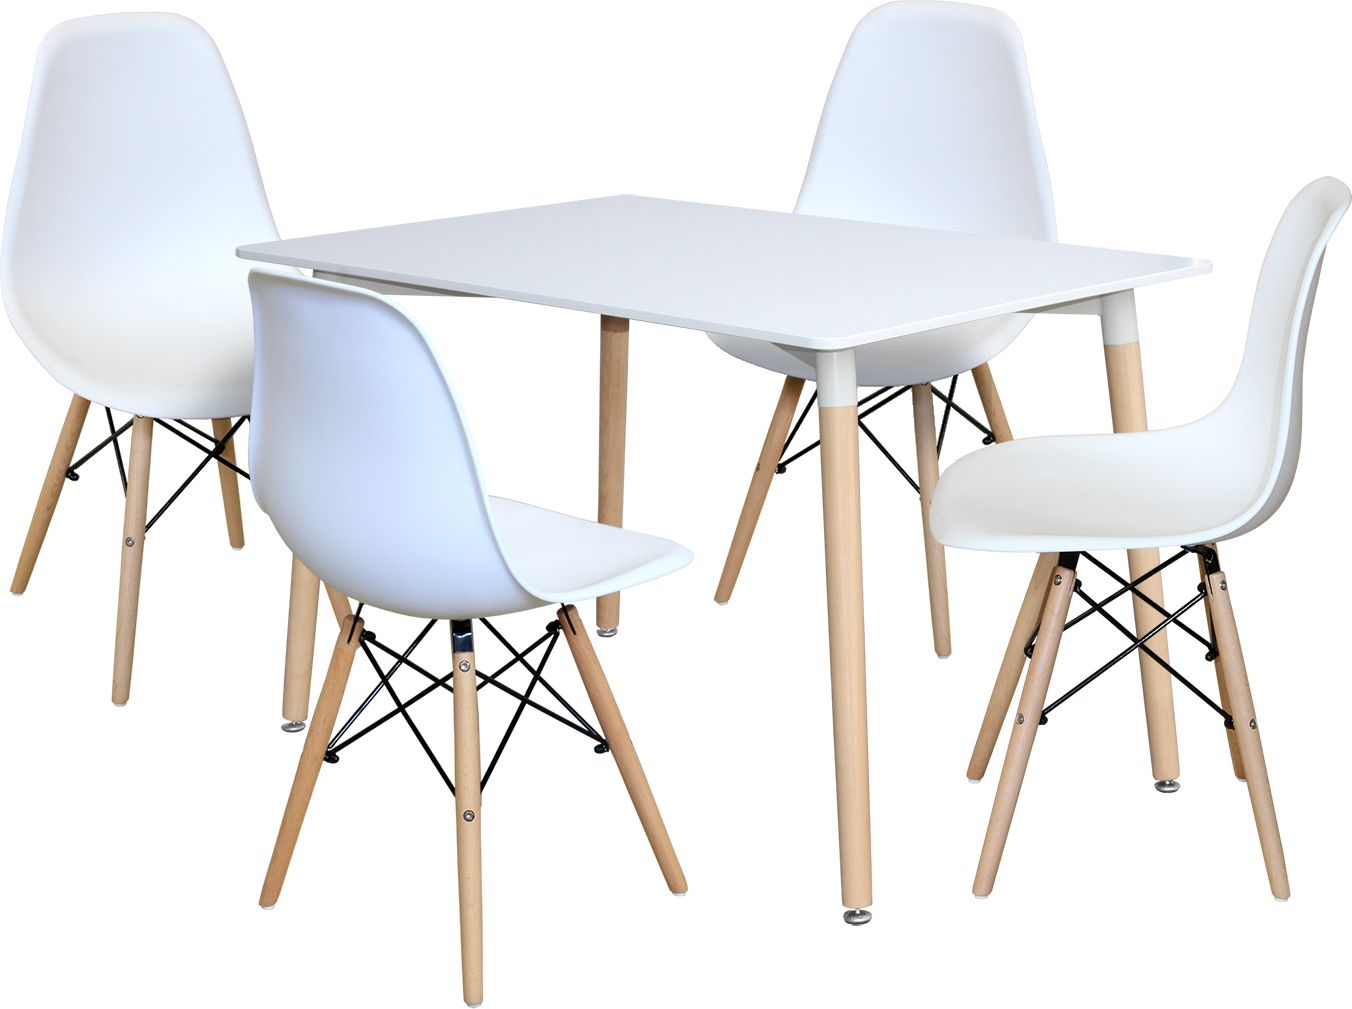 Jídelní stůl 120x80 UNO bílý + 4 židle UNO bílé Mdum - M DUM.cz